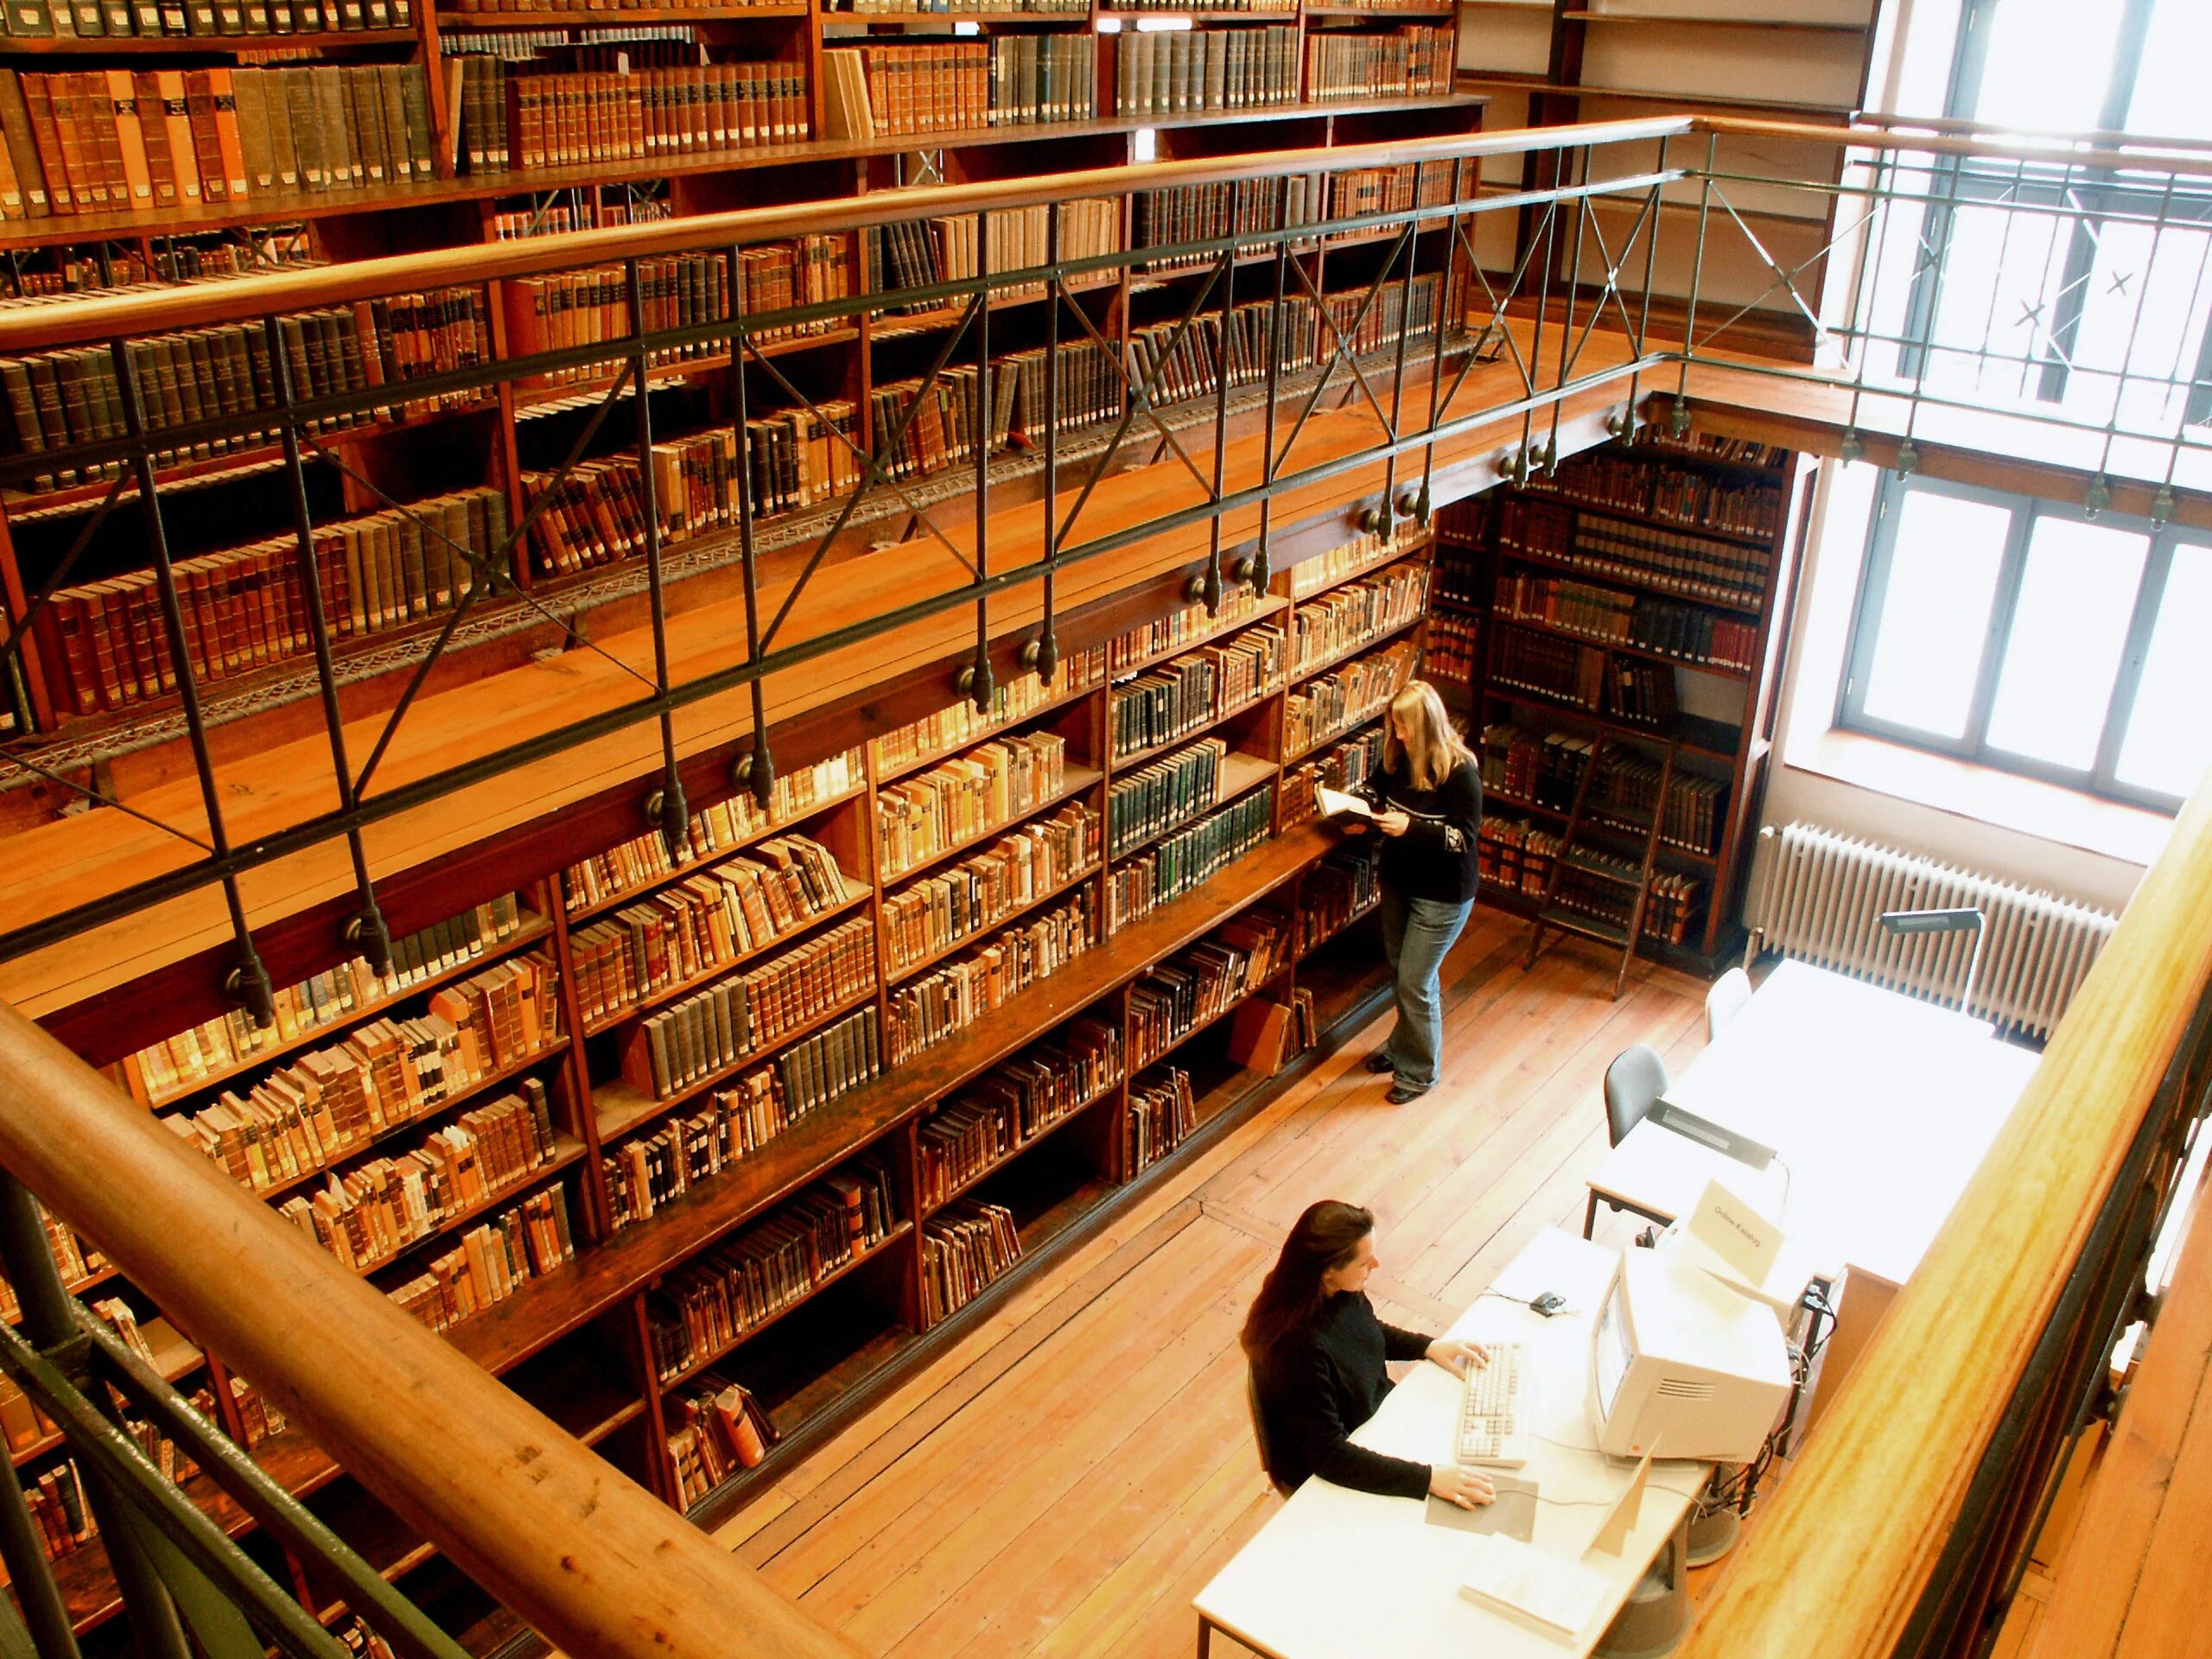 Войти в научную библиотеку. Библиотека Болонского университета. Библиотека Геттингенского университета. Геттингенский университет Германия 19 век. Университетская библиотека в Болонье.